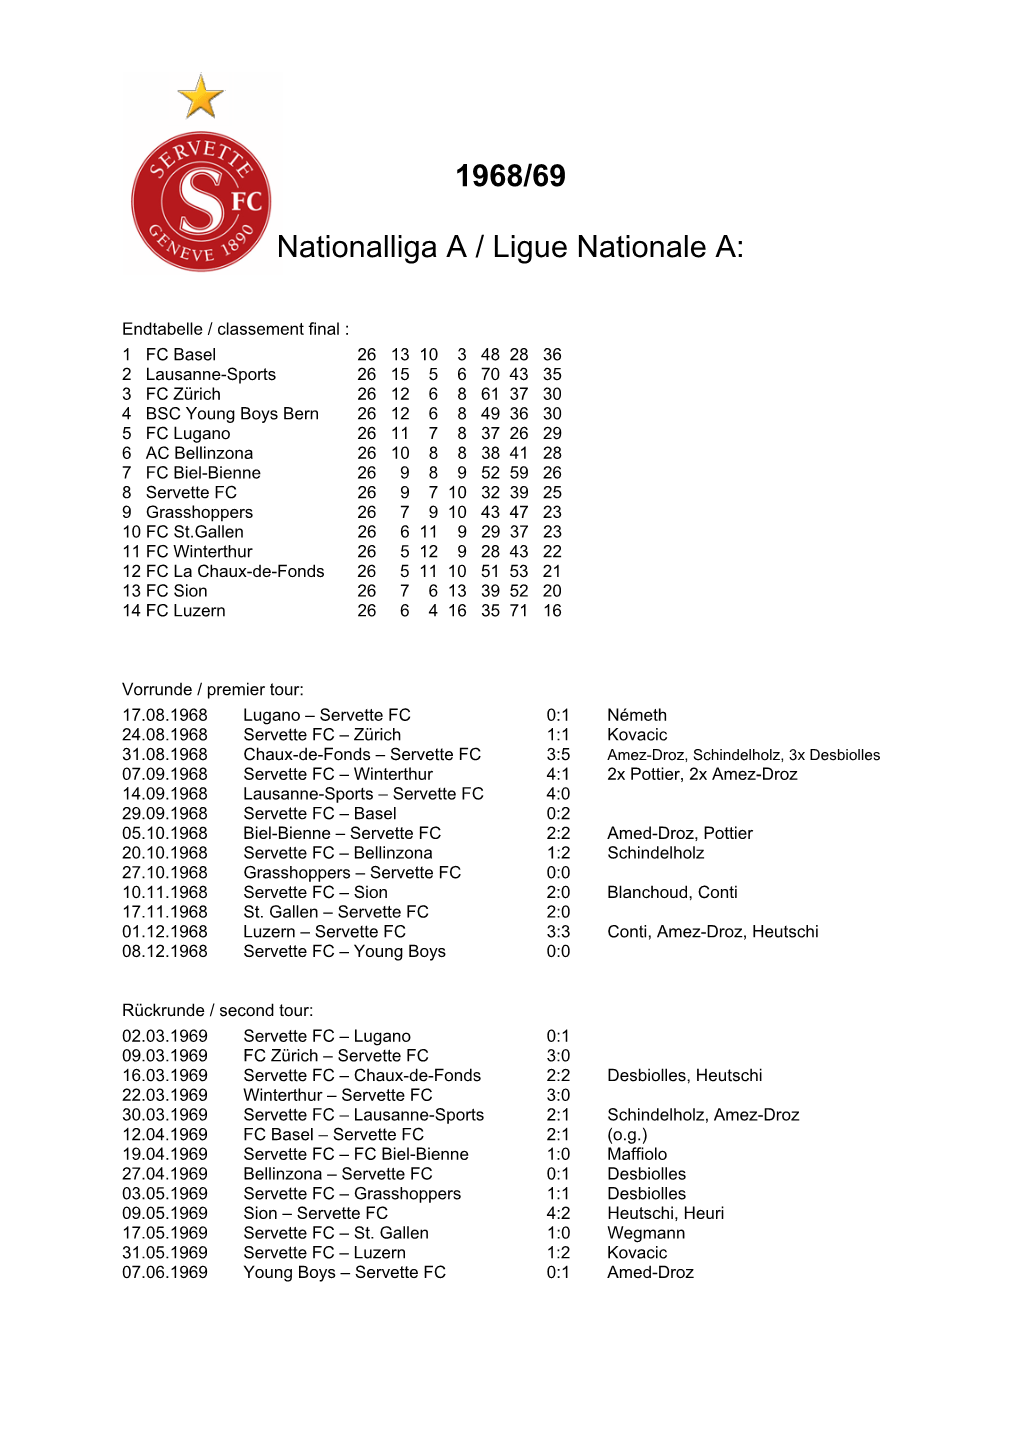 1968/69 Nationalliga a / Ligue Nationale A